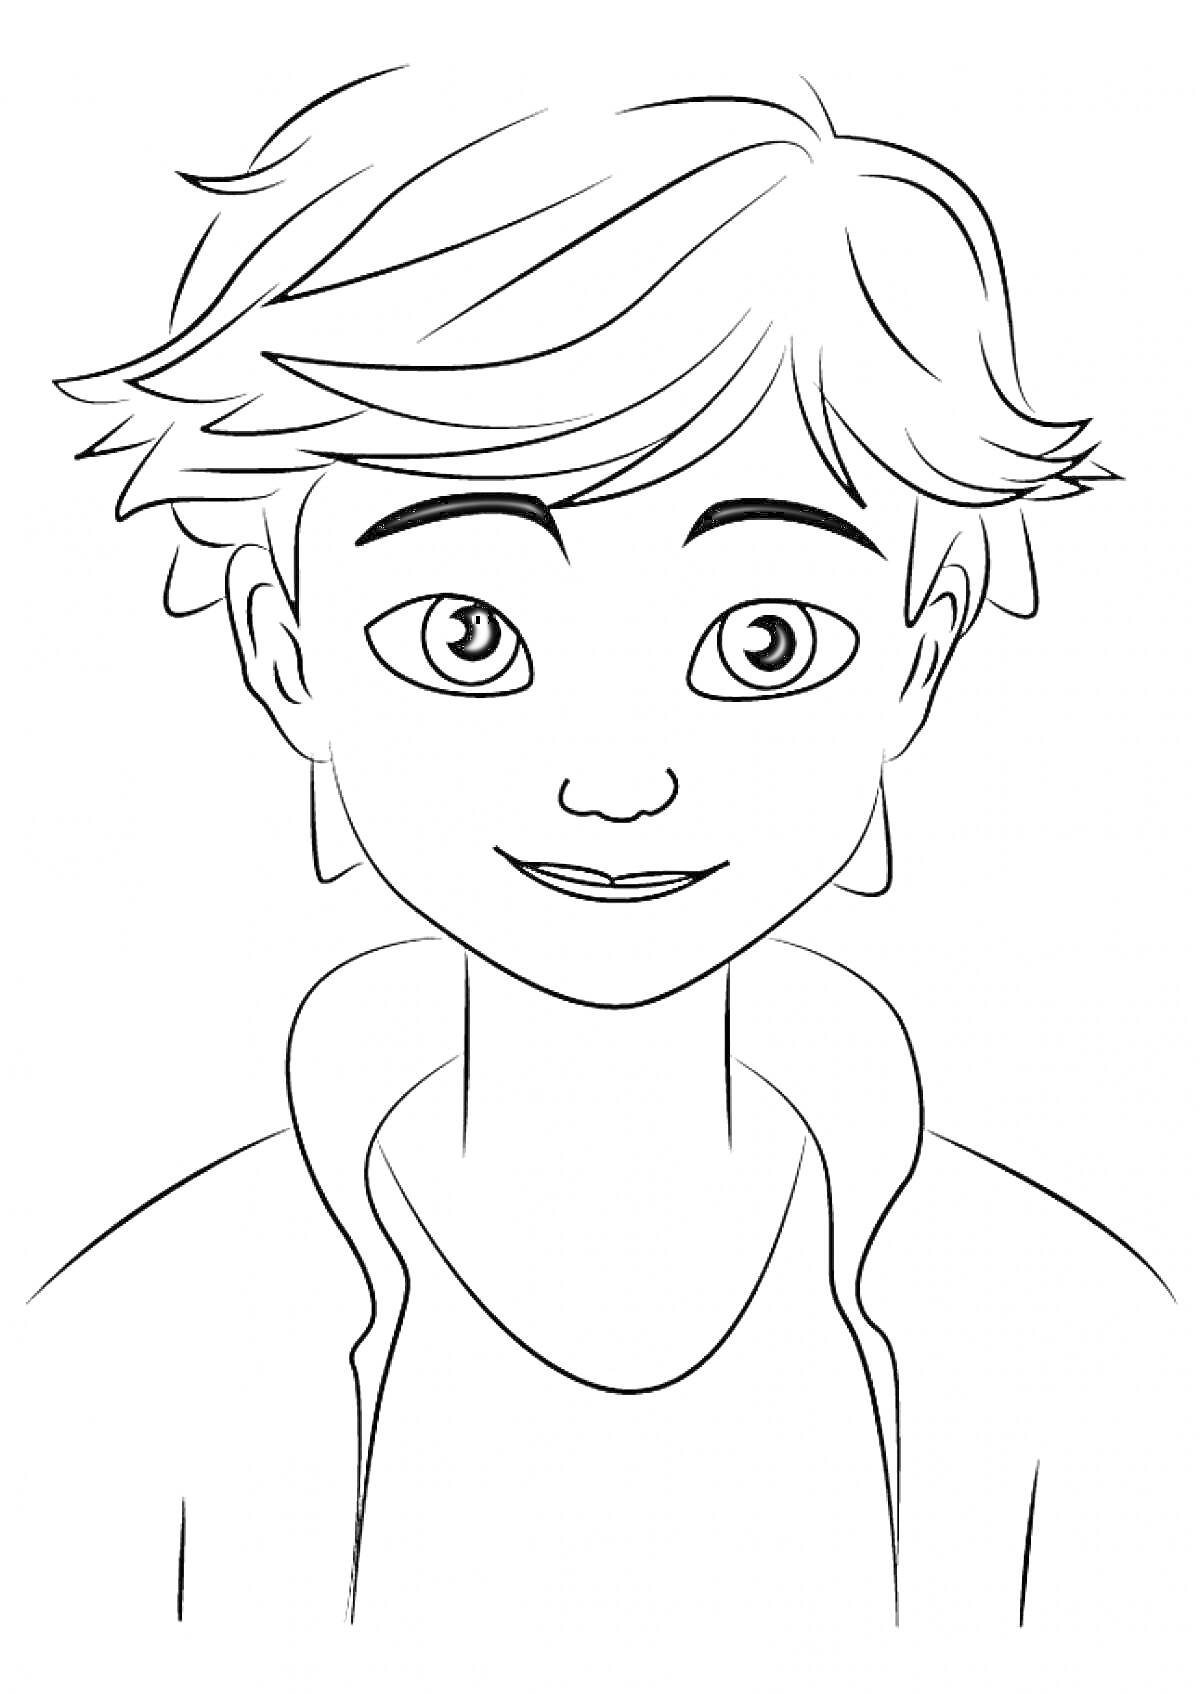 Портрет молодого персонажа с короткими волосами и улыбкой из мультсериала «Леди Баг и Супер-Кот»